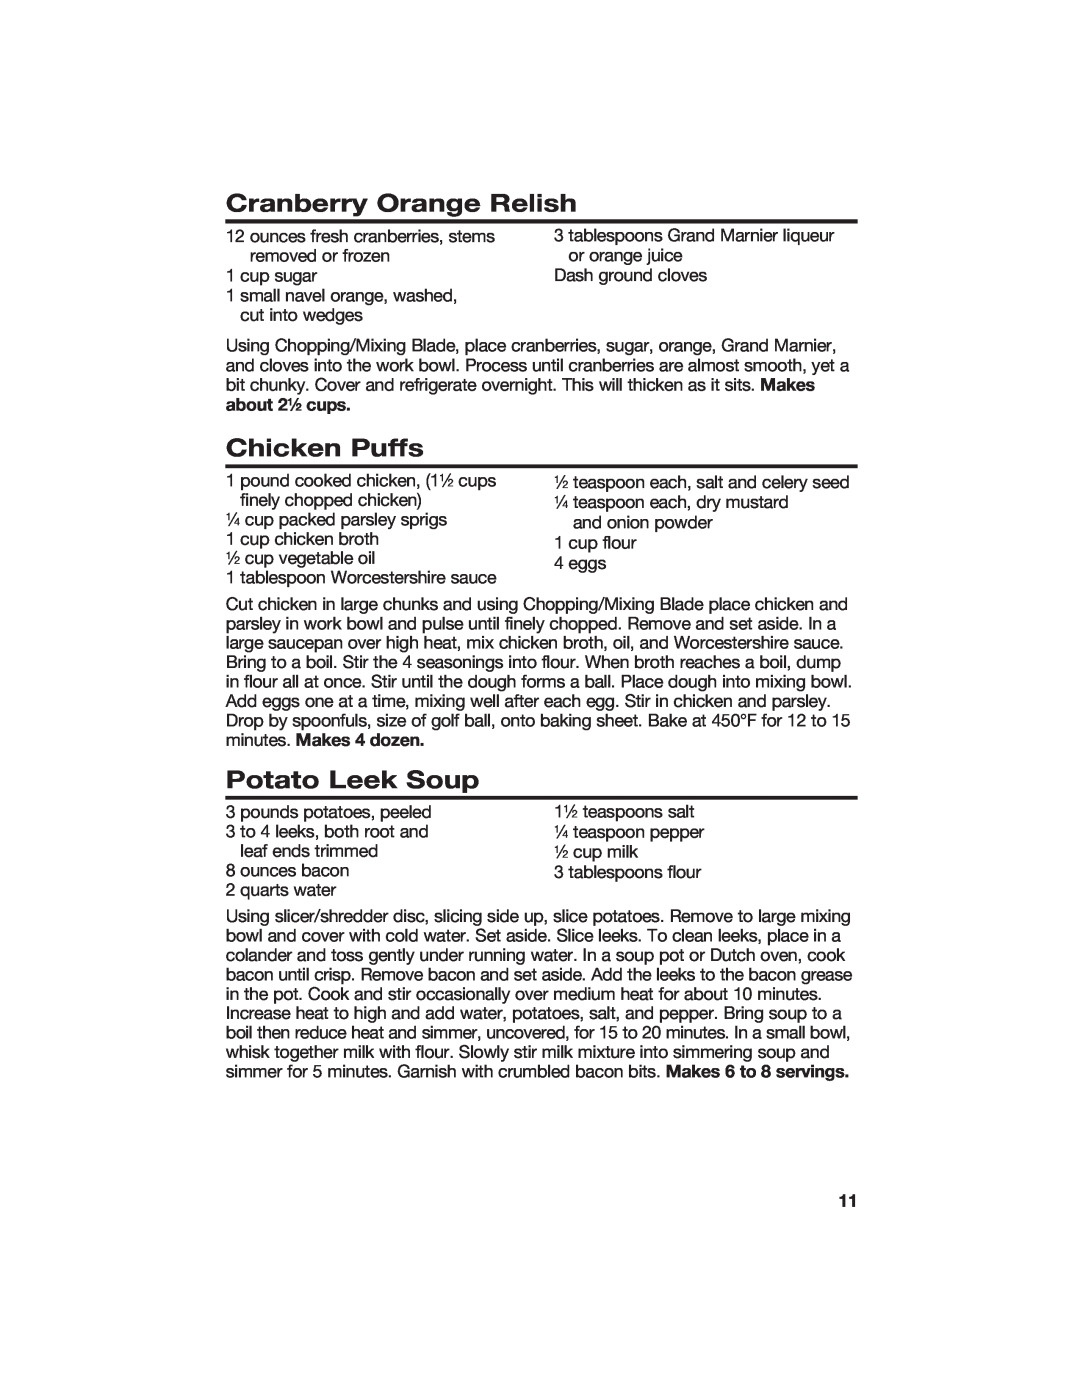 Hamilton Beach 840118100 manual Cranberry Orange Relish, Chicken Puffs, Potato Leek Soup 